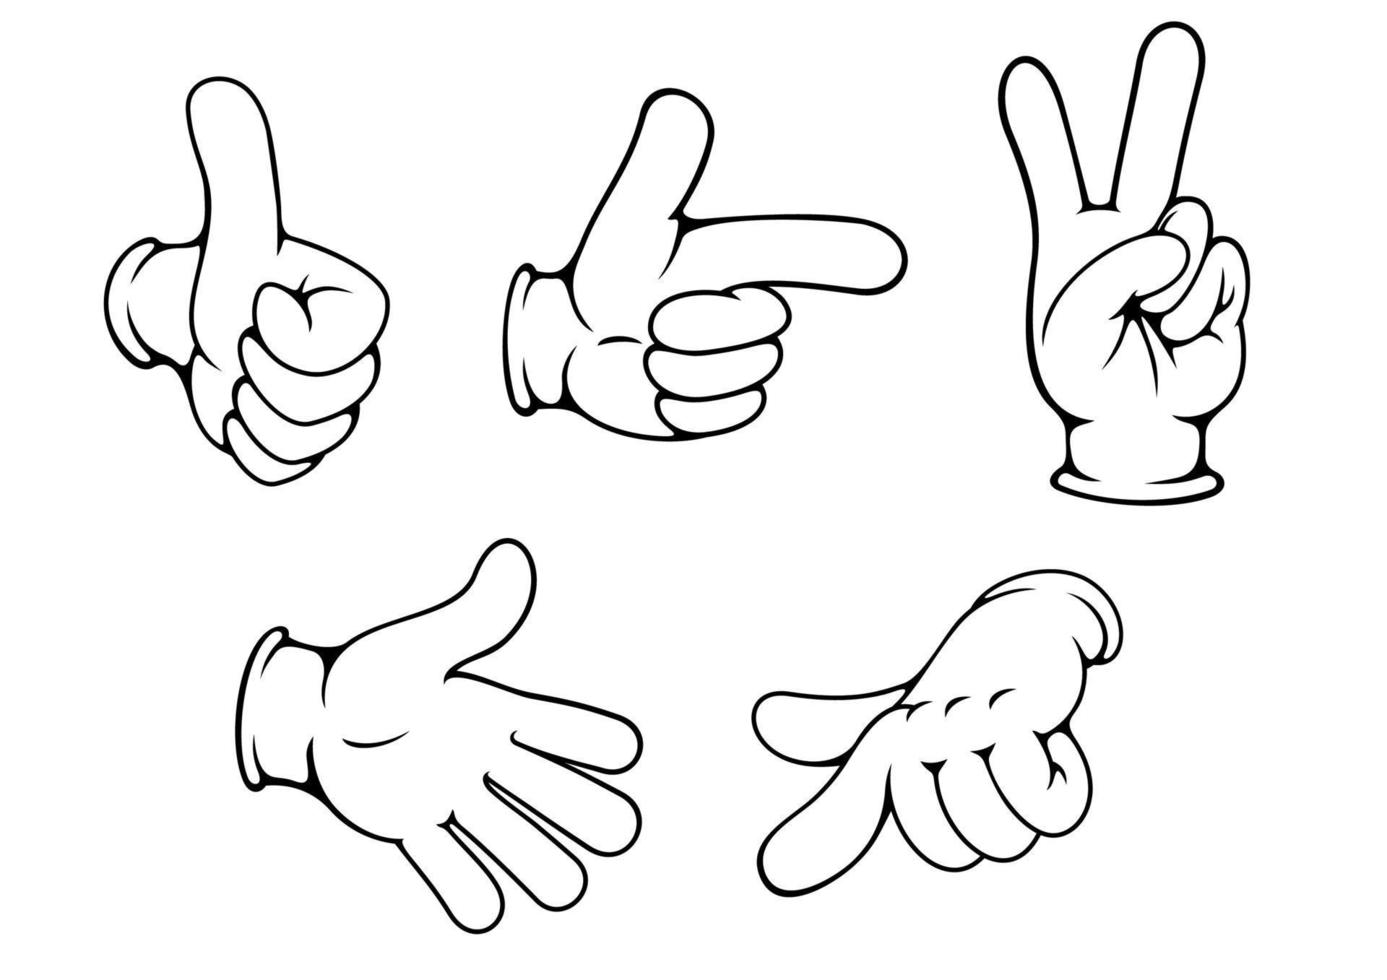 Set of positive hands gestures vector